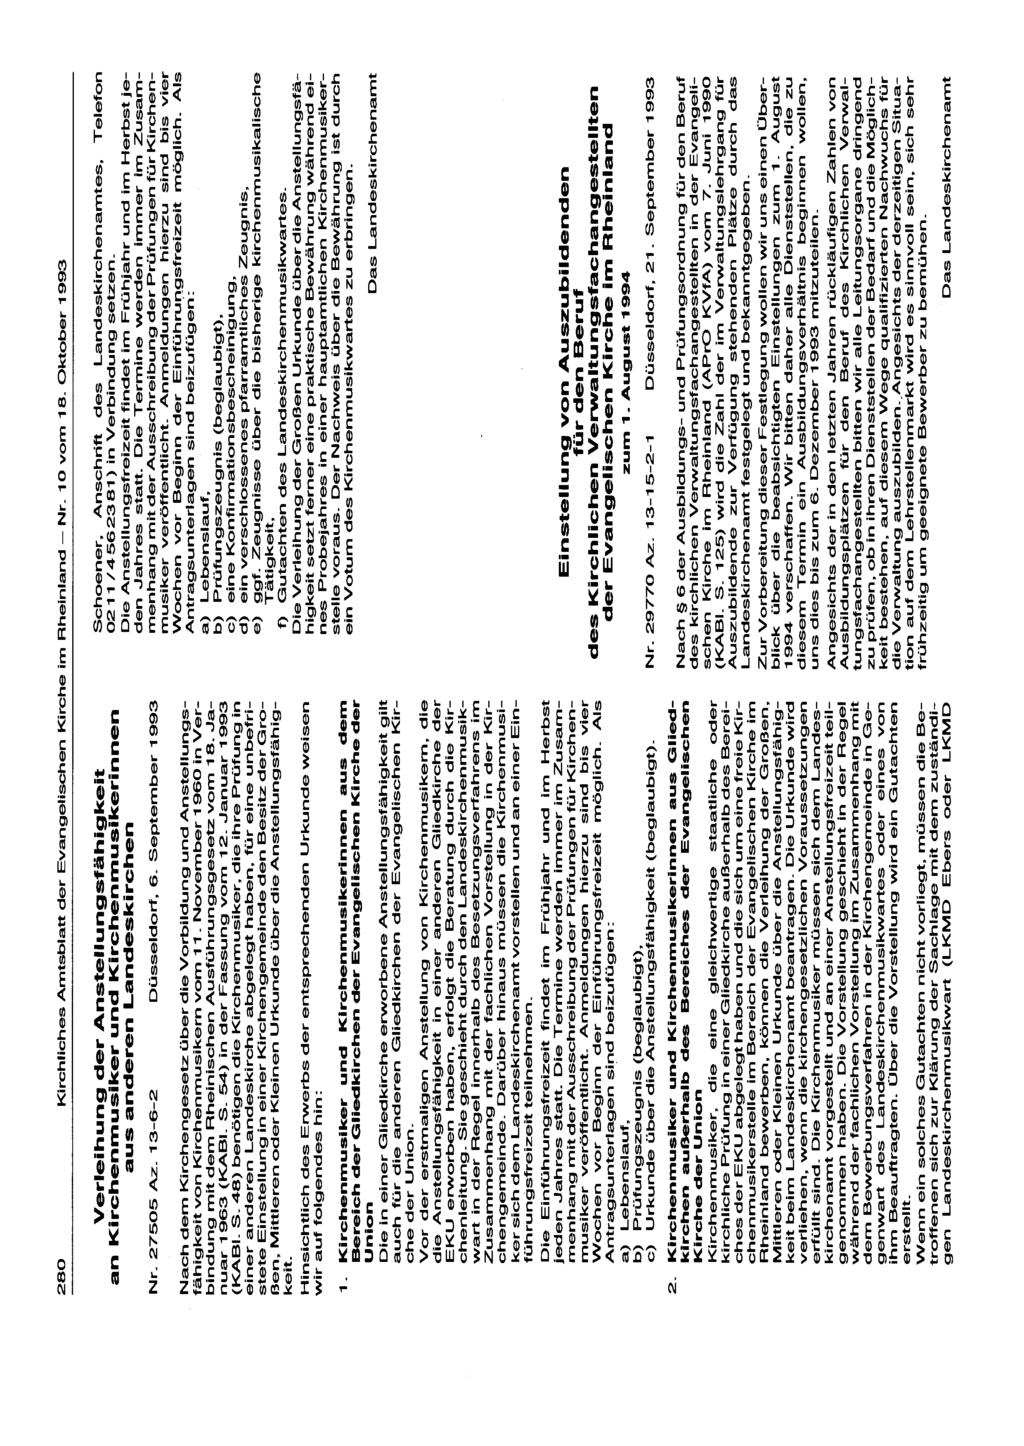 280 KirchfidlesAmtsblatt der Evangeüschen Kirche im Rheinland- Nr. 10 vom 18. Oktober 1993 Verleihung der Anstellungsfähigkeit an Kirchenmusiker und Kirchenmusikerinnen aus anderen Landeskirchen Nr.